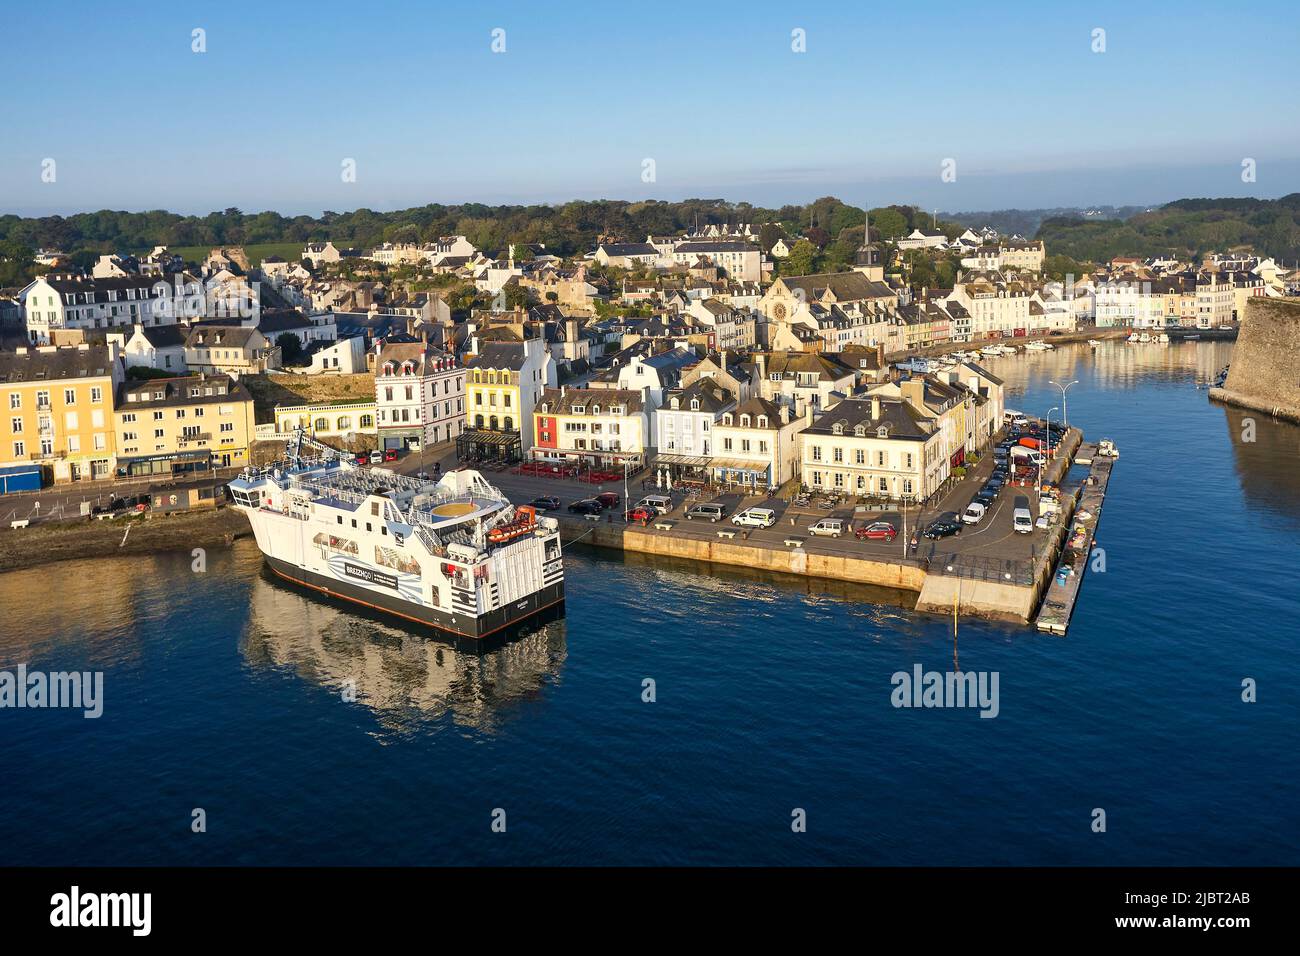 France, Morbihan, Belle Ile en mer, Le Palais, the harbour (aerial view) Stock Photo